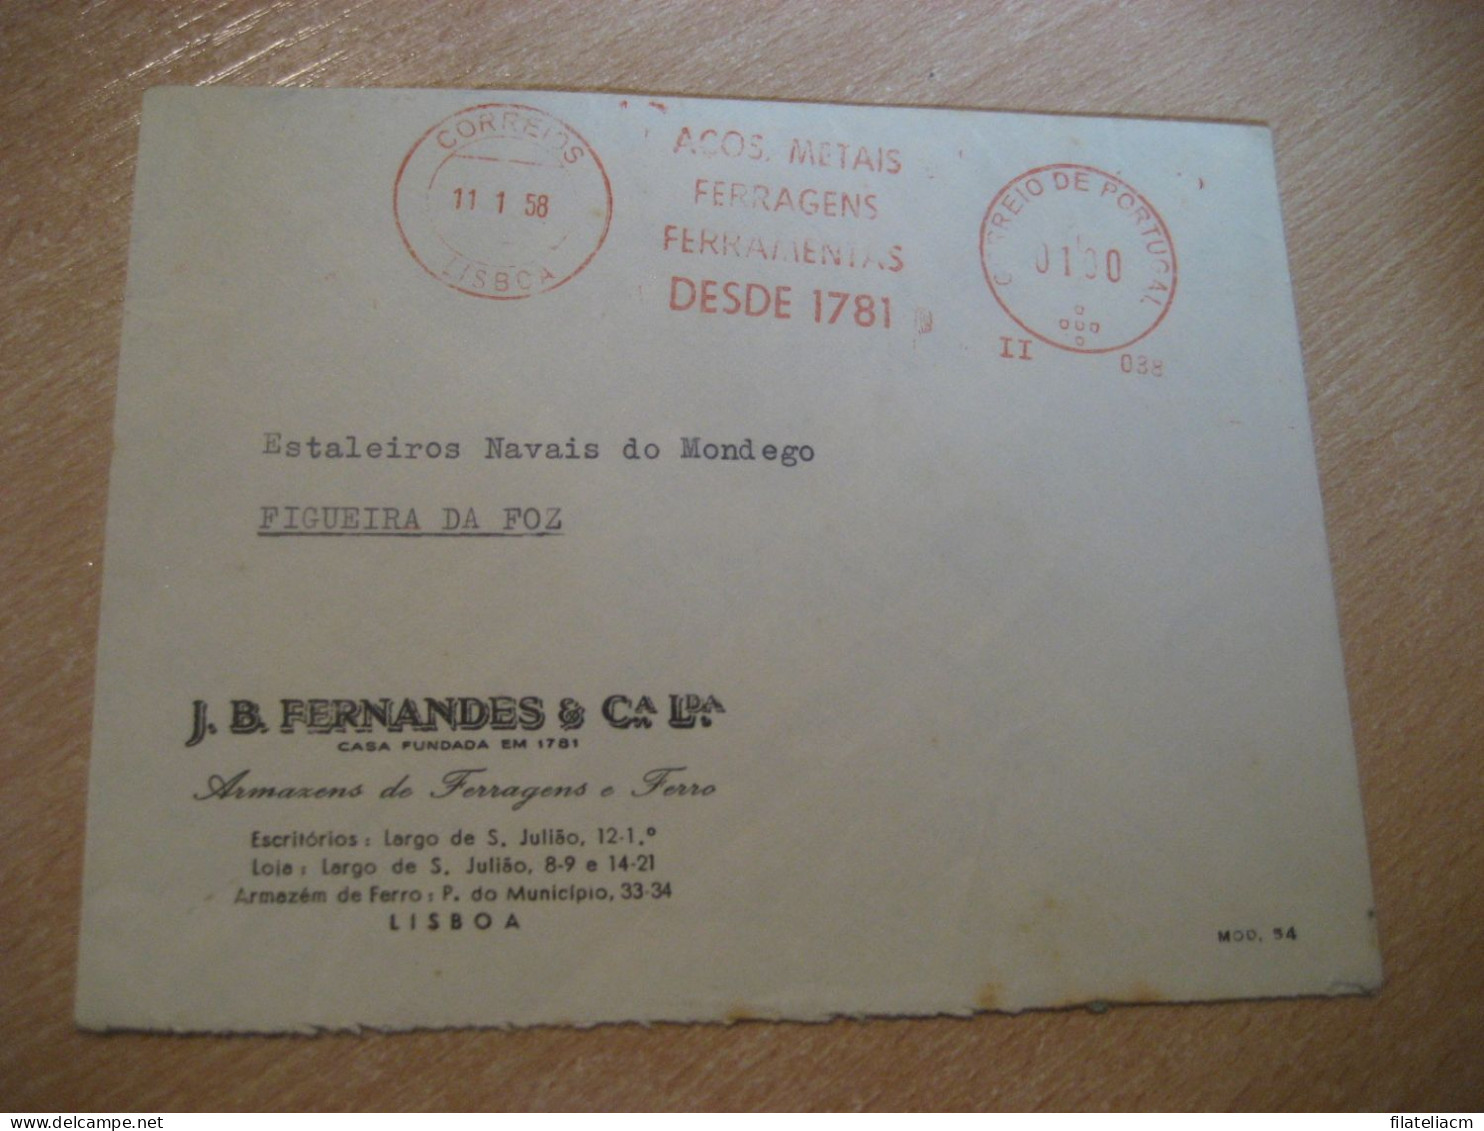 LISBOA 1958 To Figueira Da Foz Acos Metais Ferragens Ferramentas Meter Mail Cancel Cover PORTUGAL - Cartas & Documentos